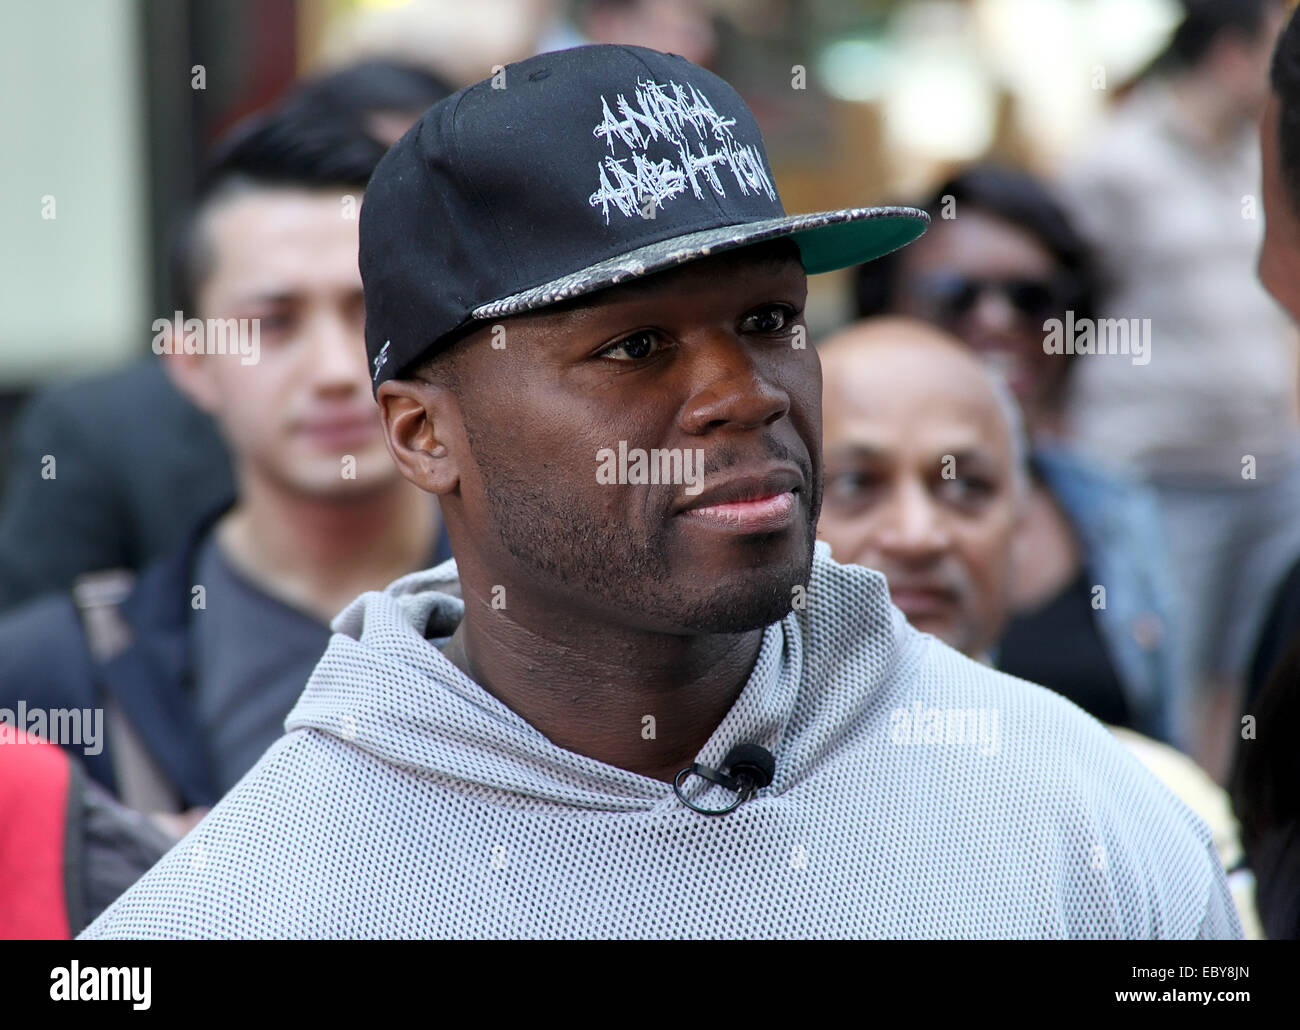 50 Cent fait la promotion de son nouvel album "Animal Ambition" au cours  d'une interview sur 'Extra' à Manhattan. Le rappeur a été repéré avec une  balle de baseball mitt et, semblant